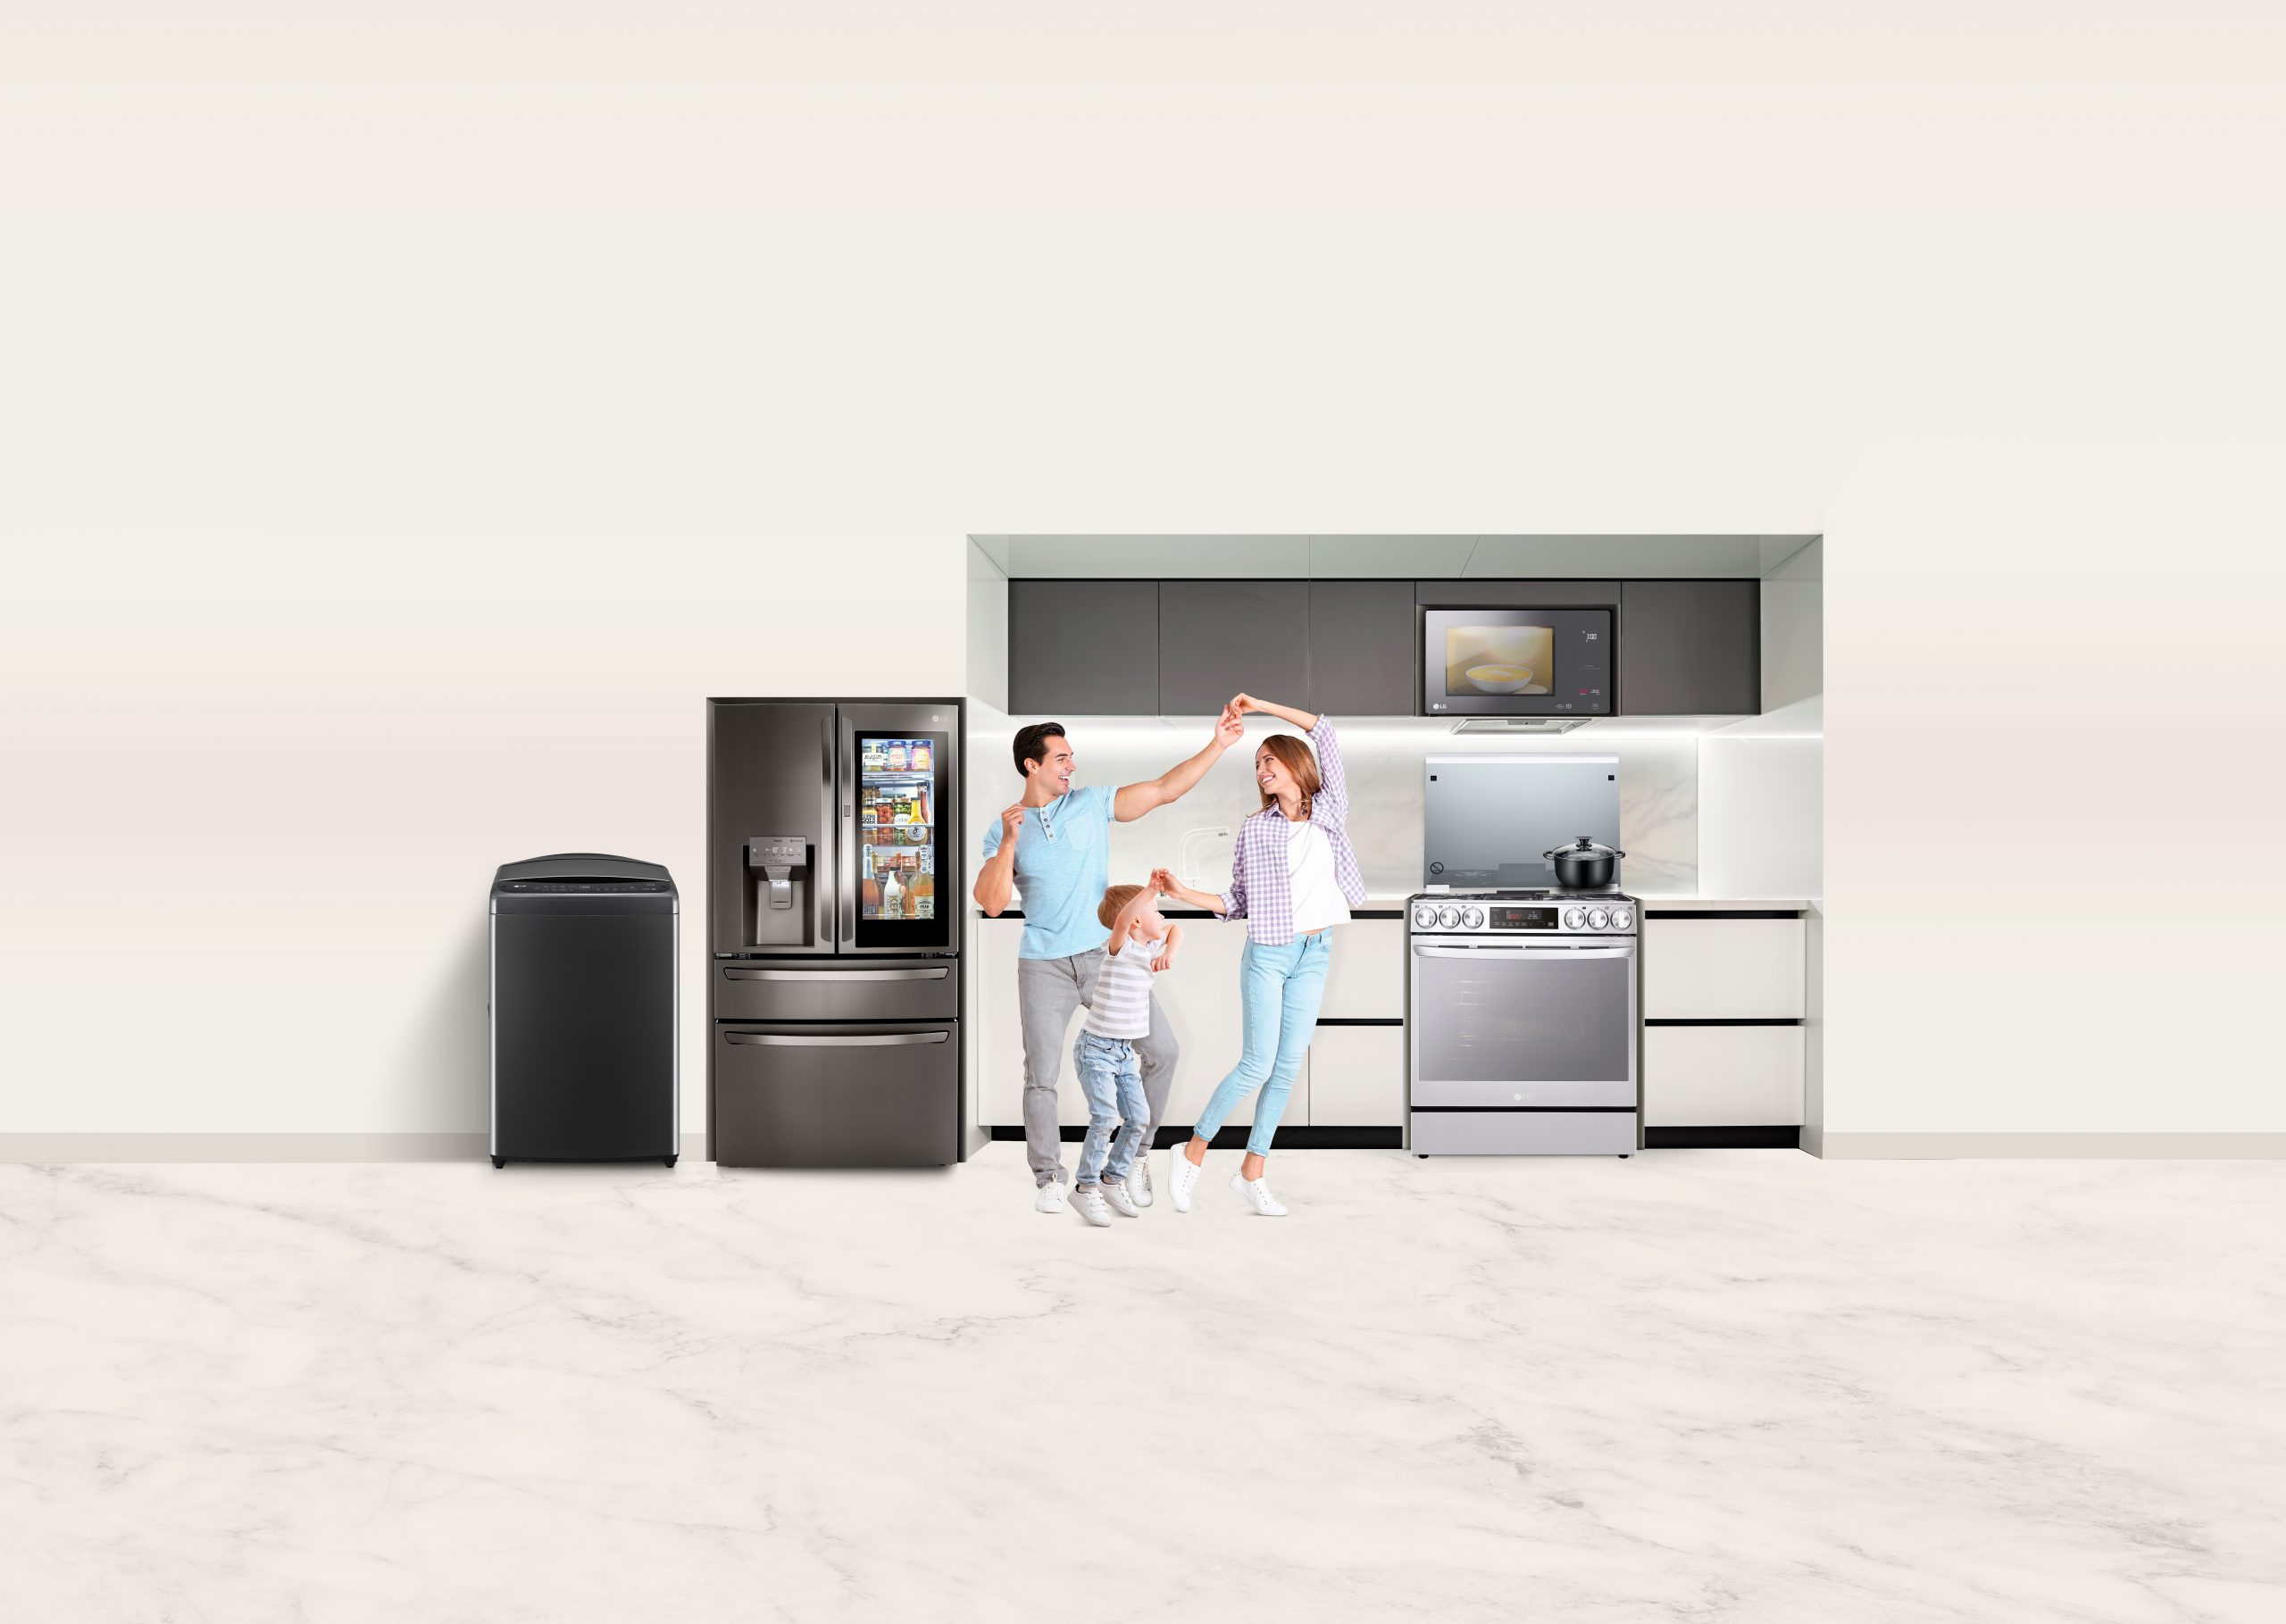 LG presenta nuevos electrodomésticos con IA capaces de aprender los hábitos del usuario y ofrecer una experiencia personalizada